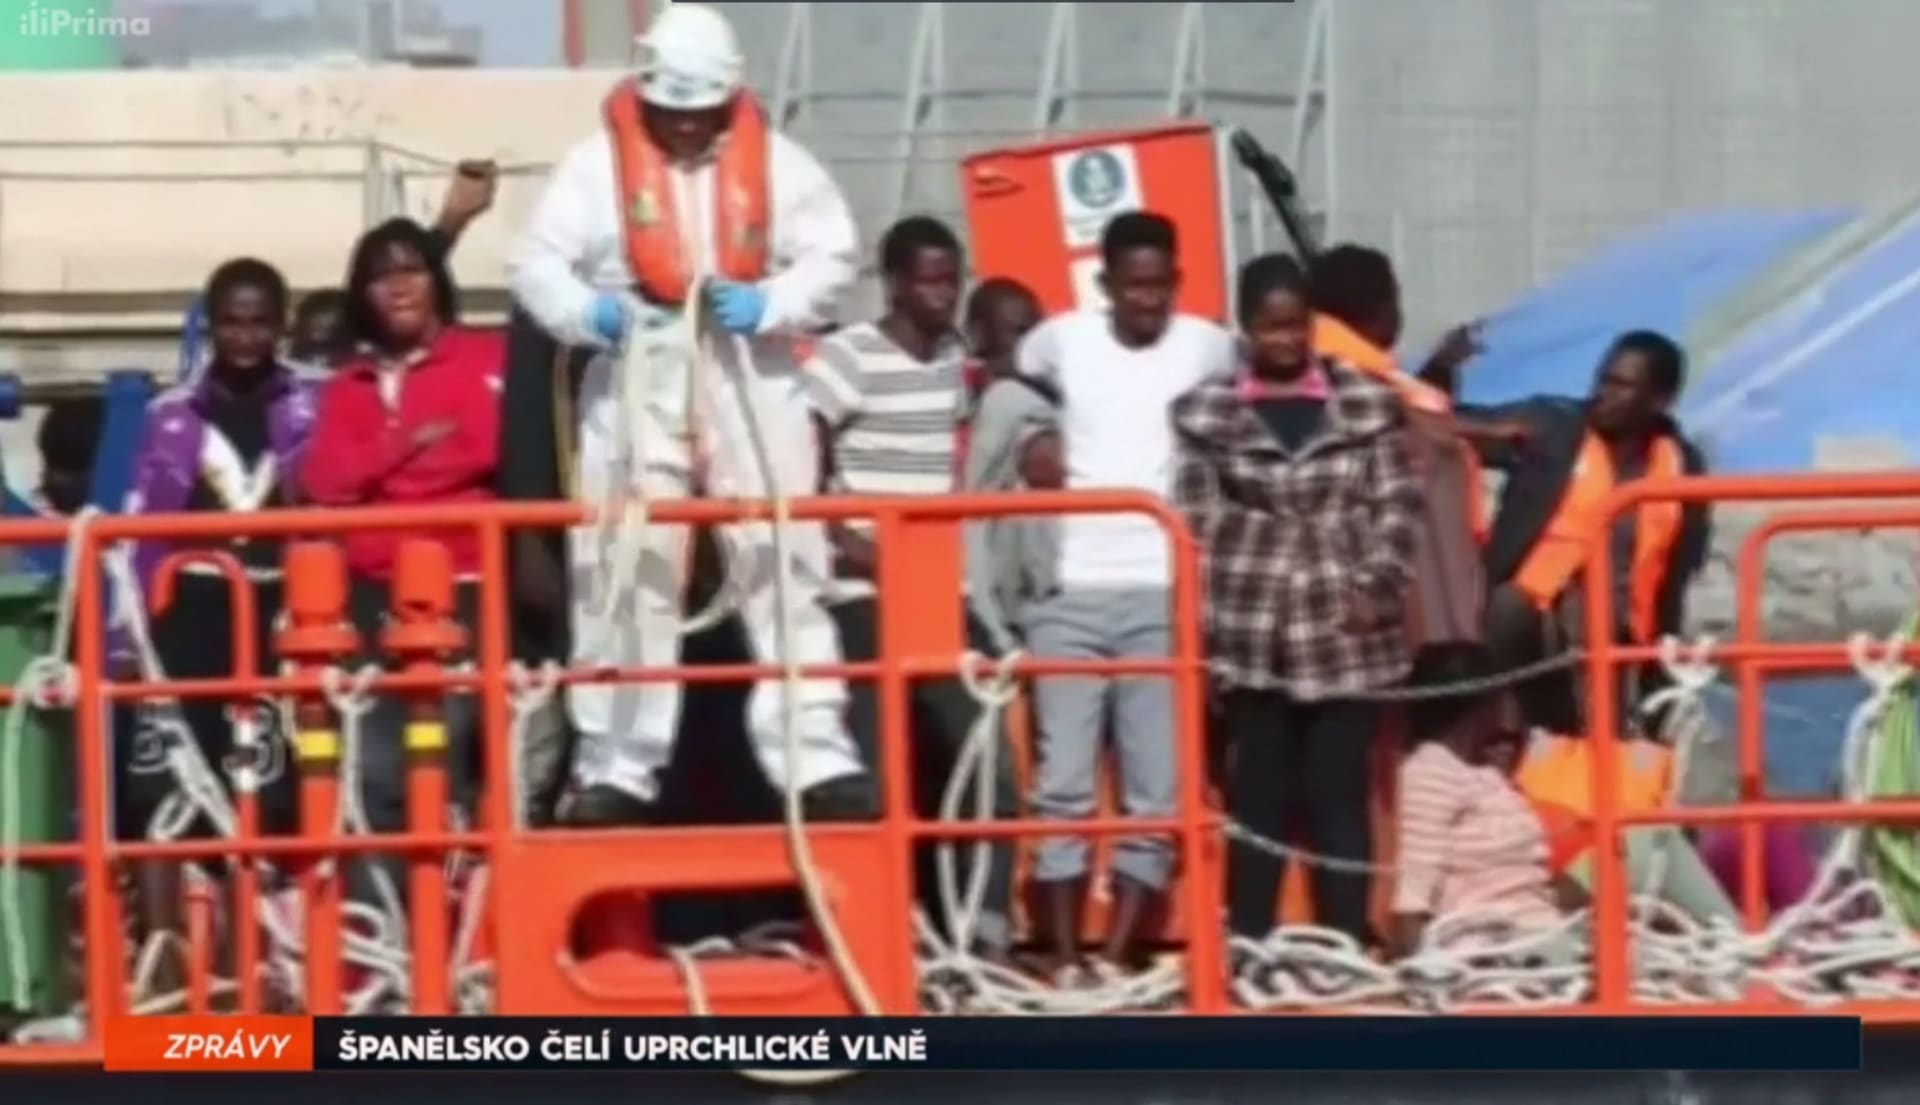 Španělsko - uprchlíci na lodi v přístavu